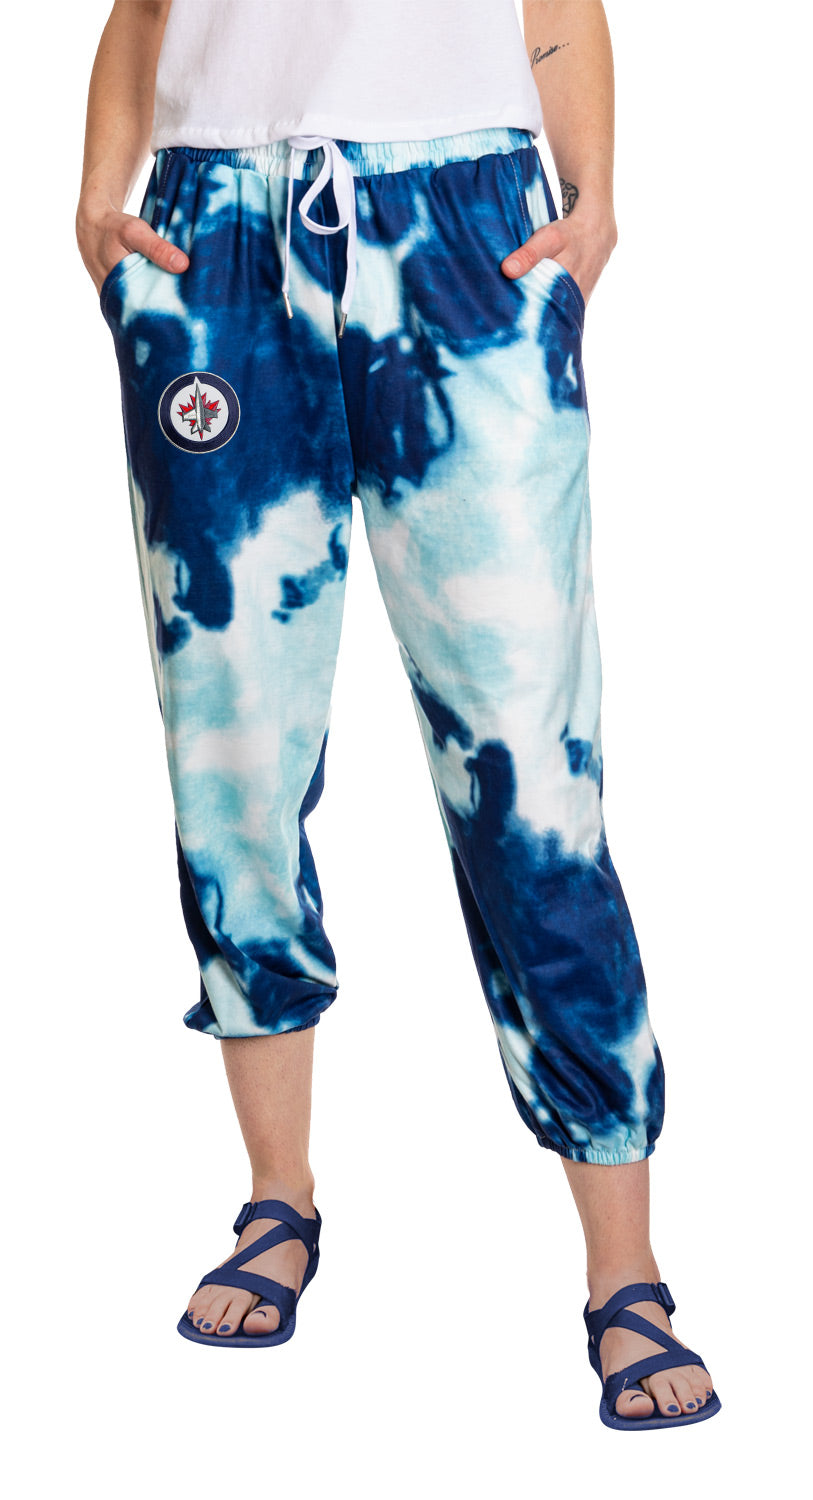 Winnipeg Jets Women's Tie Dye Fashion Leisure Pants